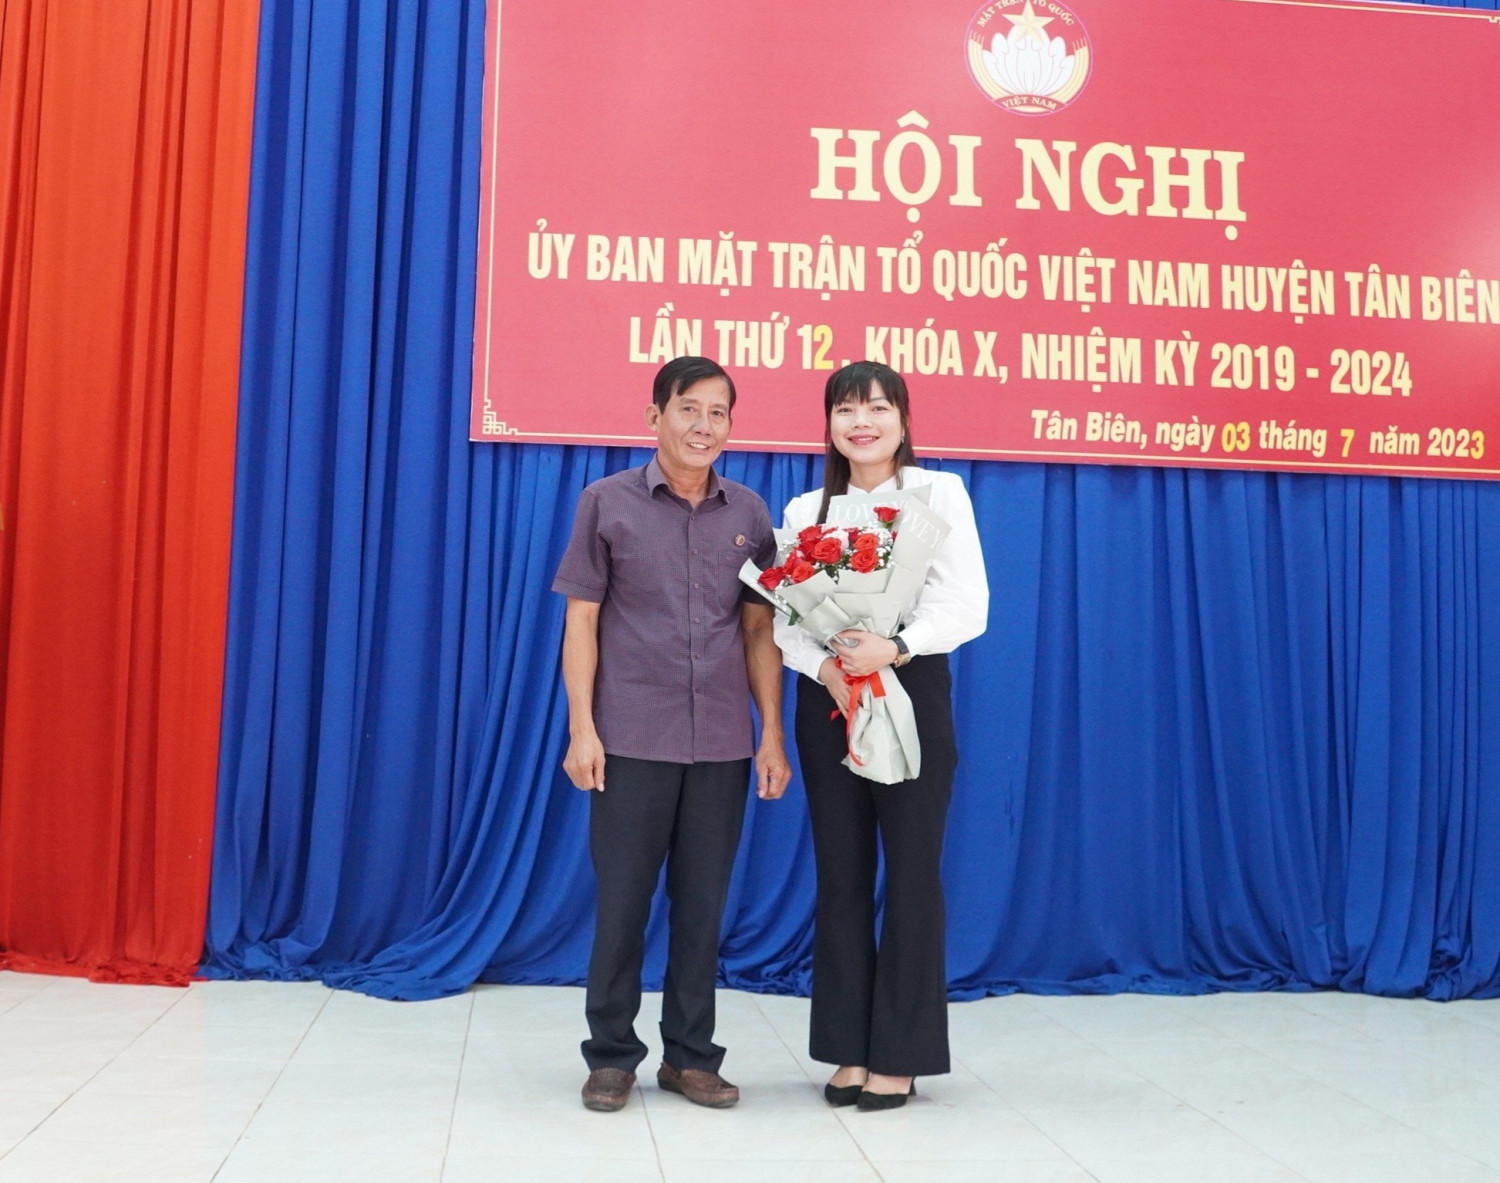 MTTQ huyện Tân Biên tổ chức hội nghị lần thứ 12, Hiệp thương cử giữ chức danh Phó chủ tịch Ủy ban MTTQ Việt Nam huyện